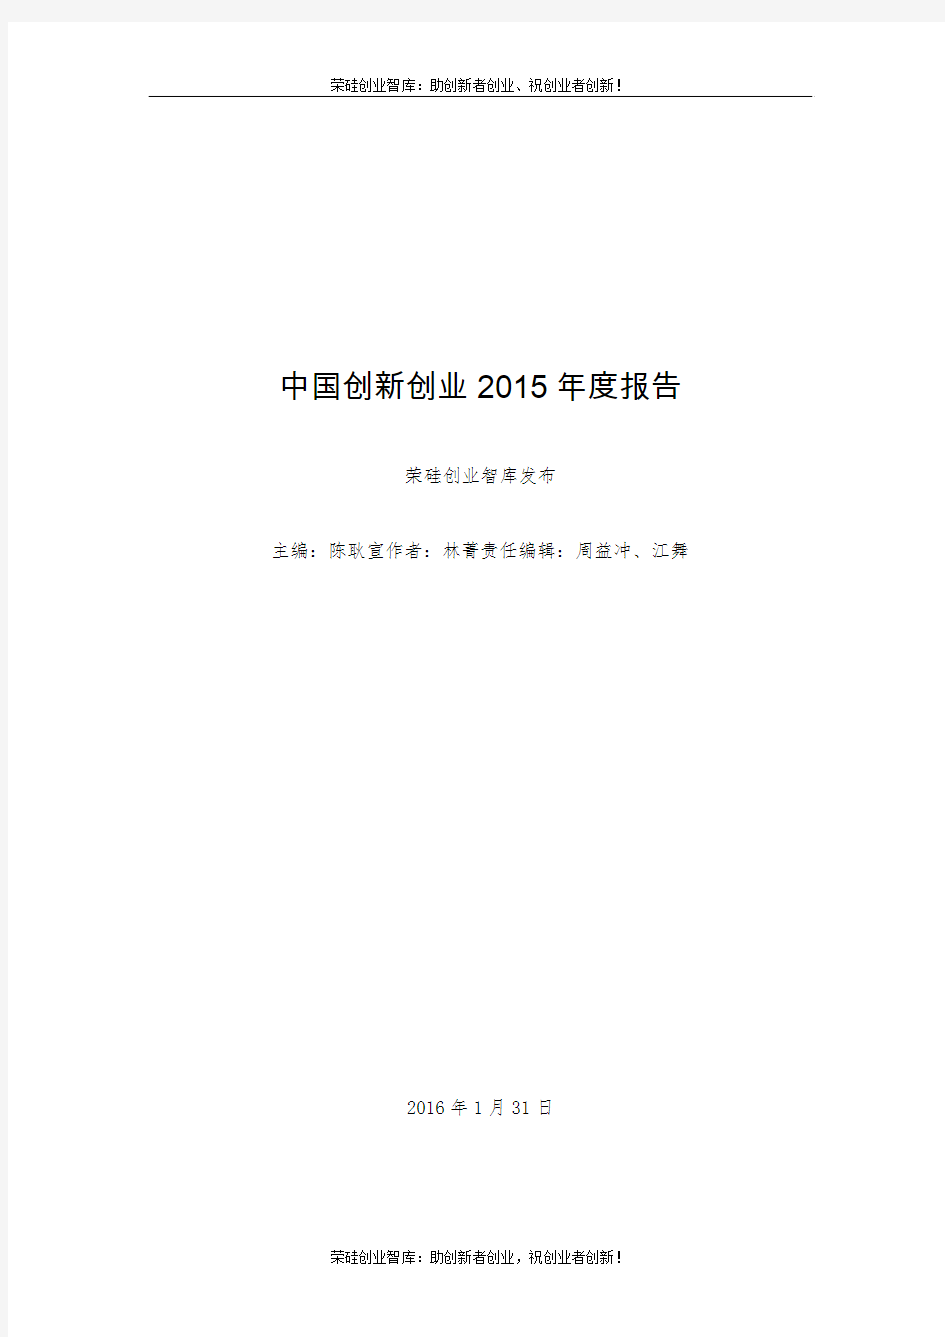 中国创新创业2015年度报告